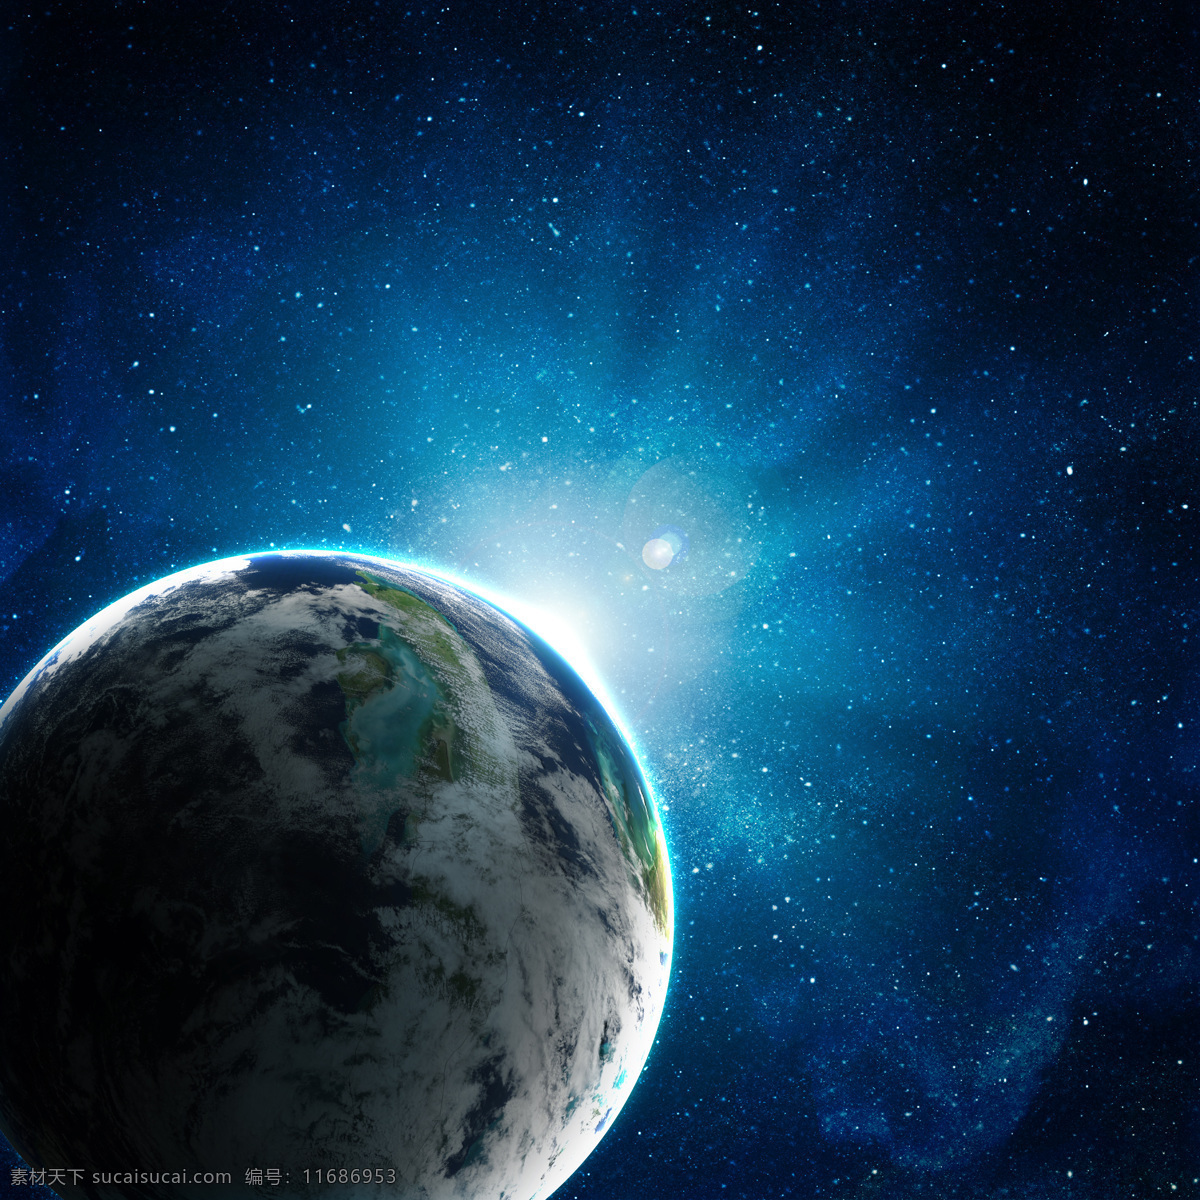 蓝色 星球 地球 宇宙星球 蓝色星球 星空 浩瀚 宇宙 星光 镜头光晕 放射光芒 宇宙太空 环境家居